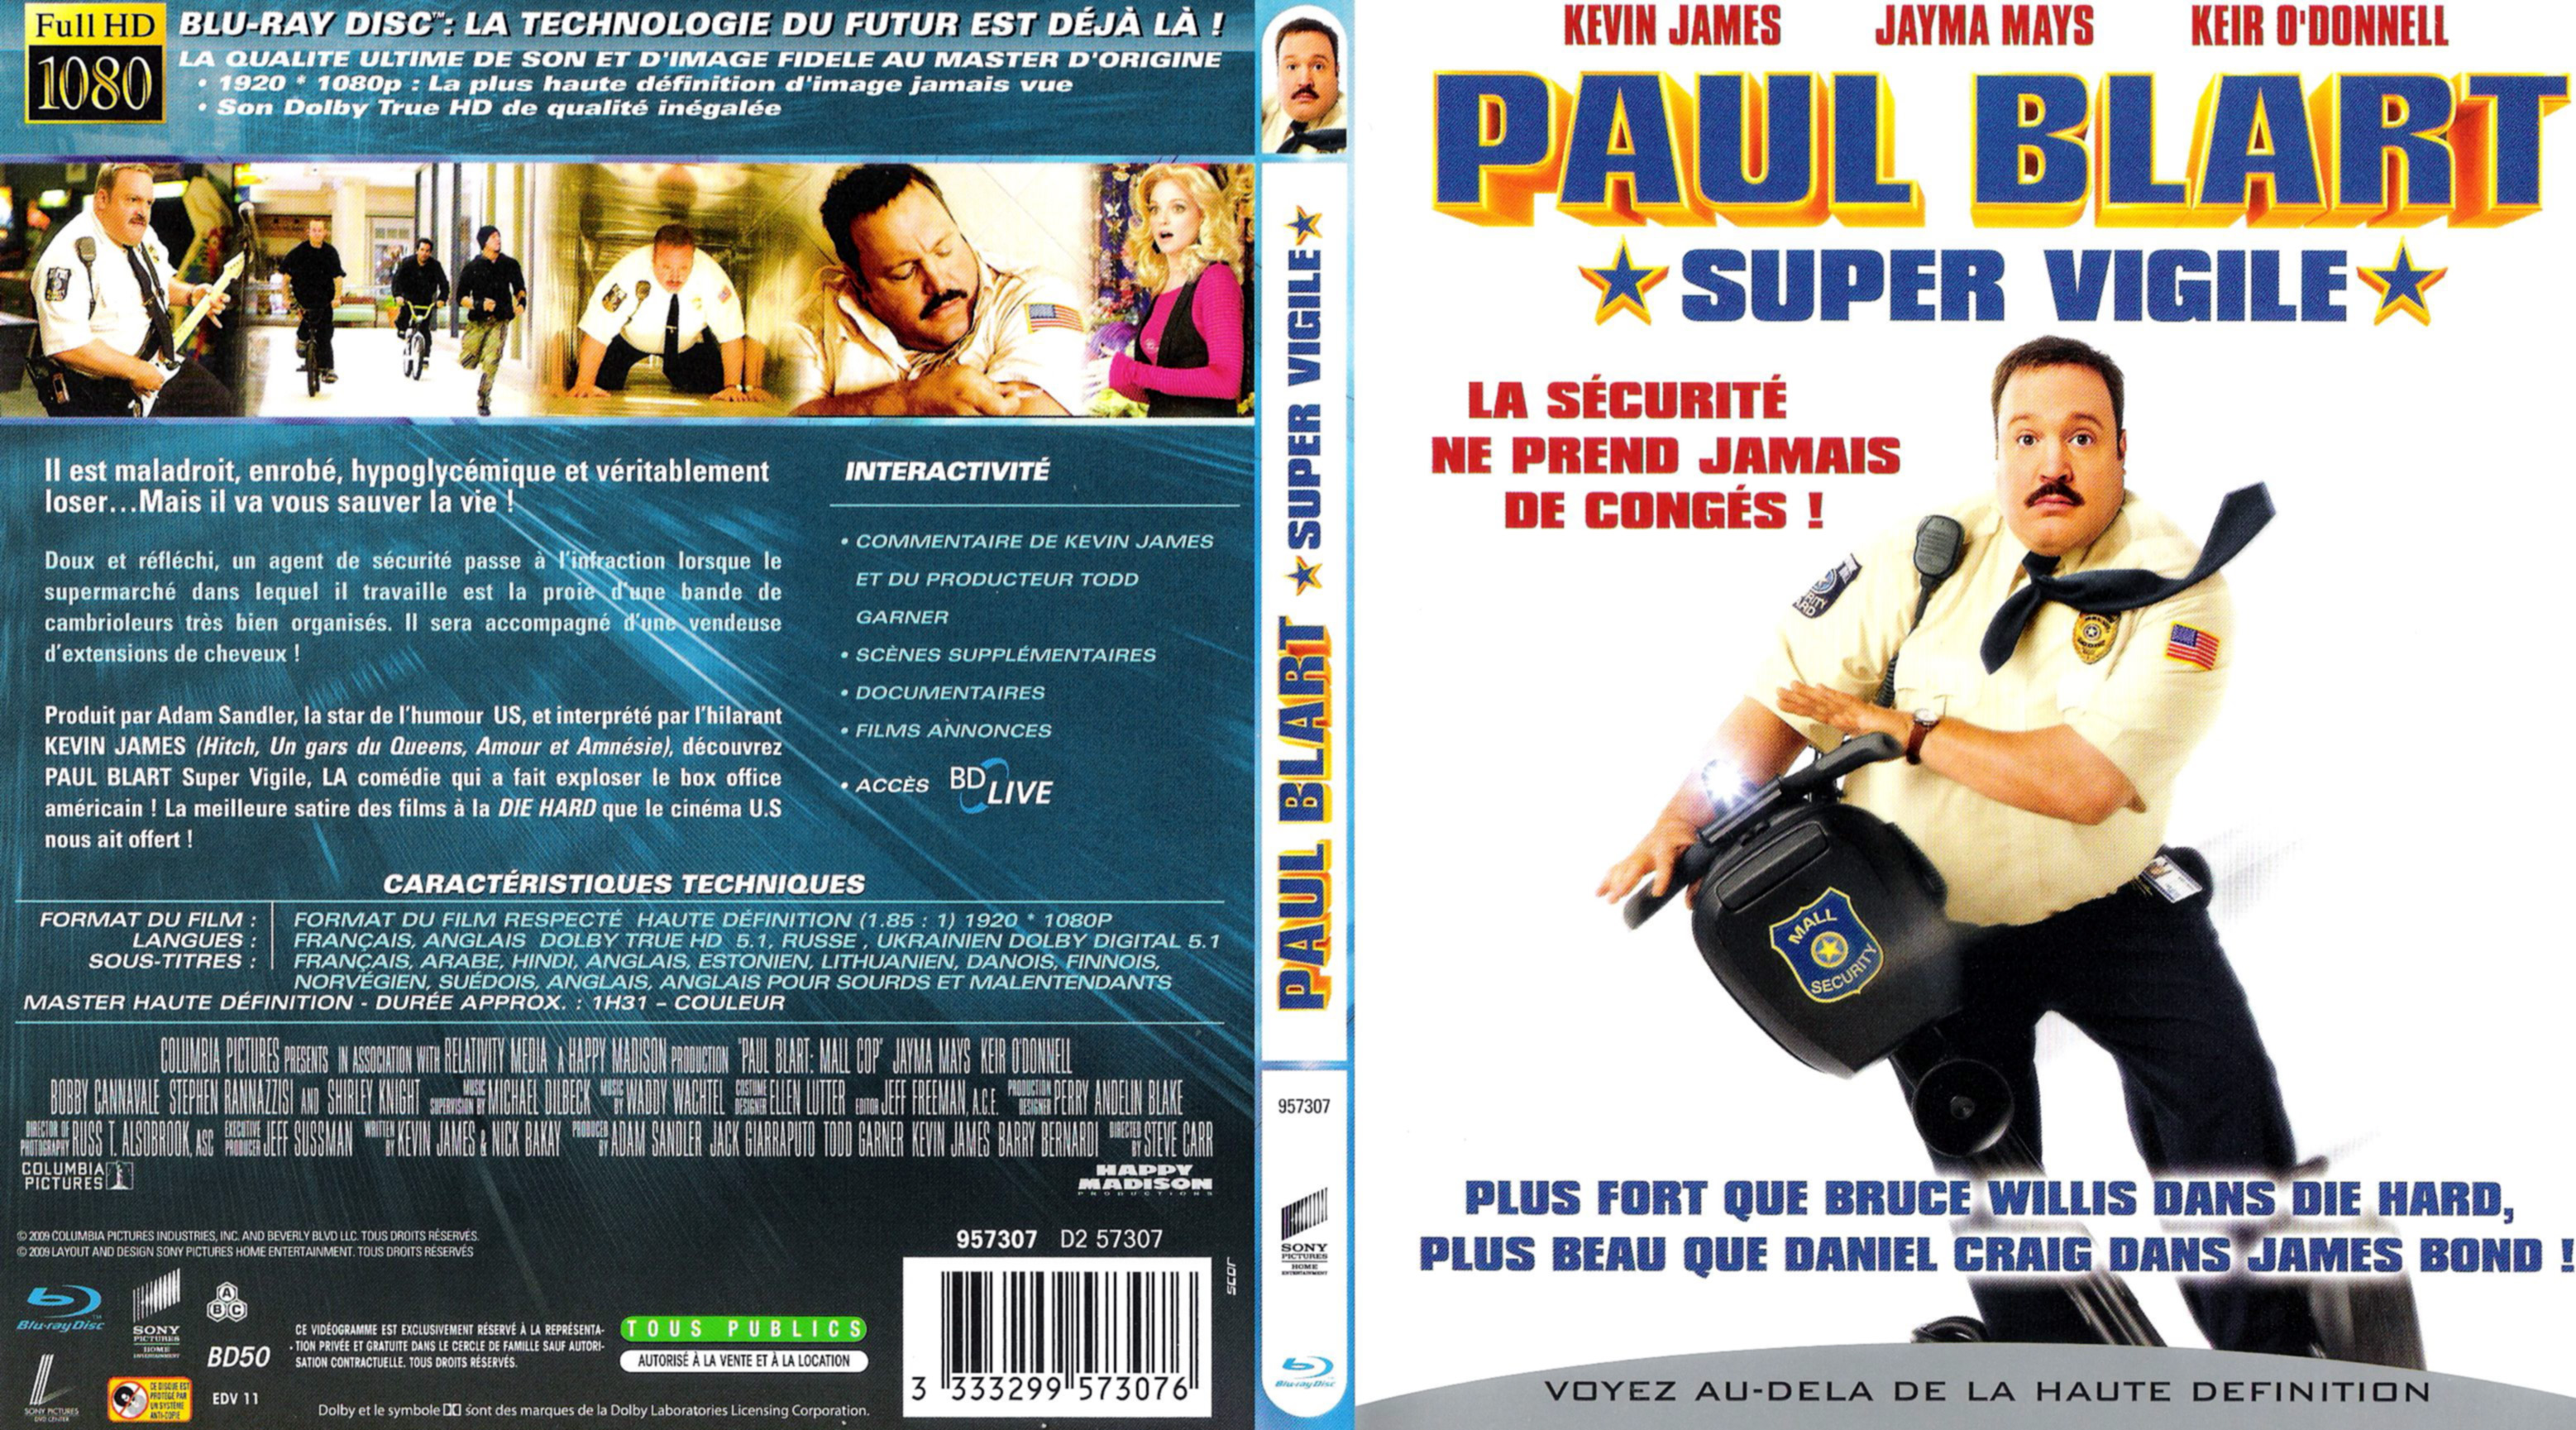 Jaquette DVD Paul Blart super vigile (BLU-RAY)